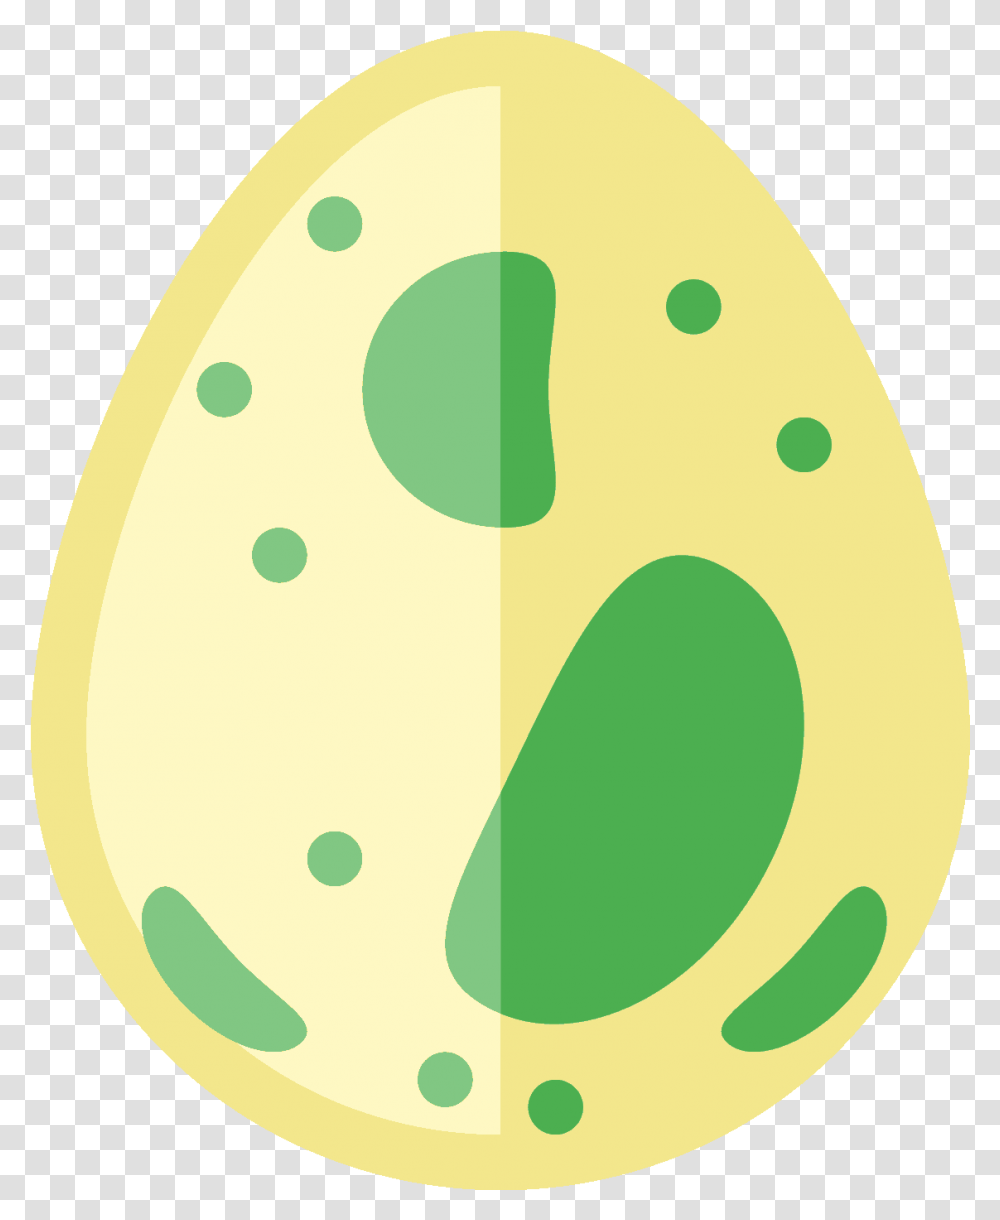 Pokemon Egg 8 Image Circle, Food, Easter Egg Transparent Png